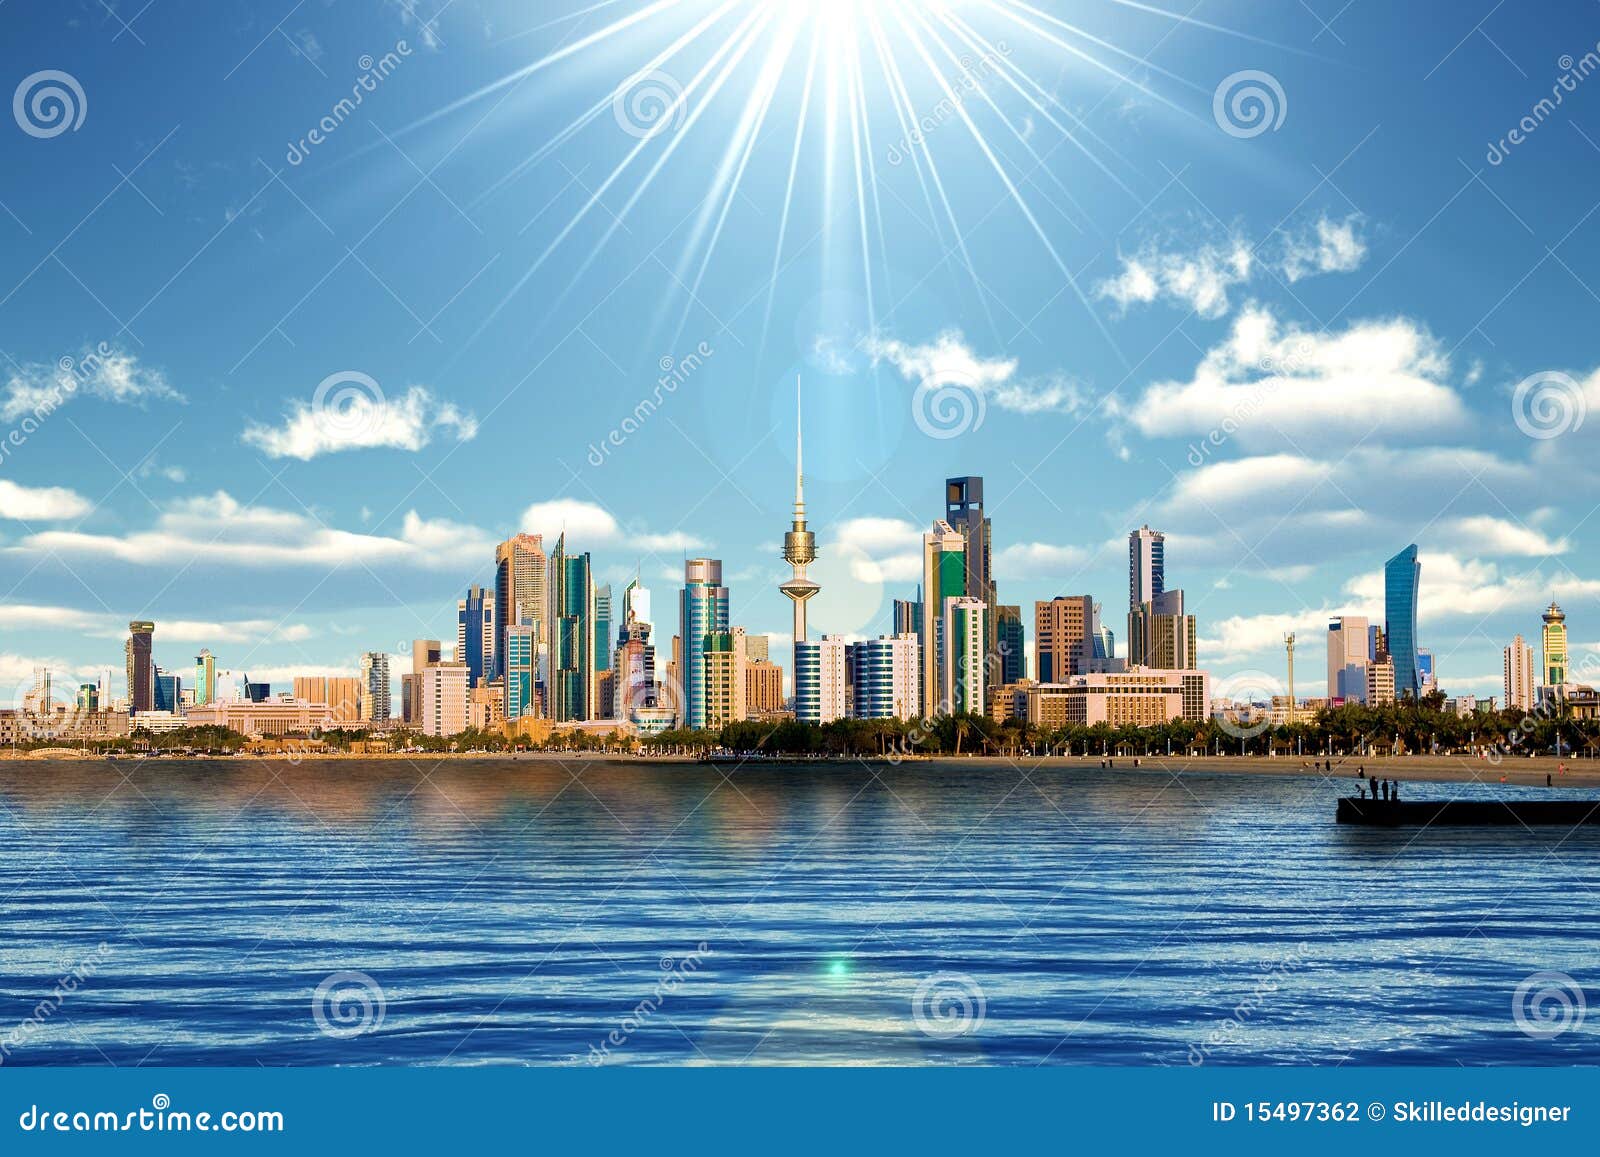 kuwait skyline and harbor